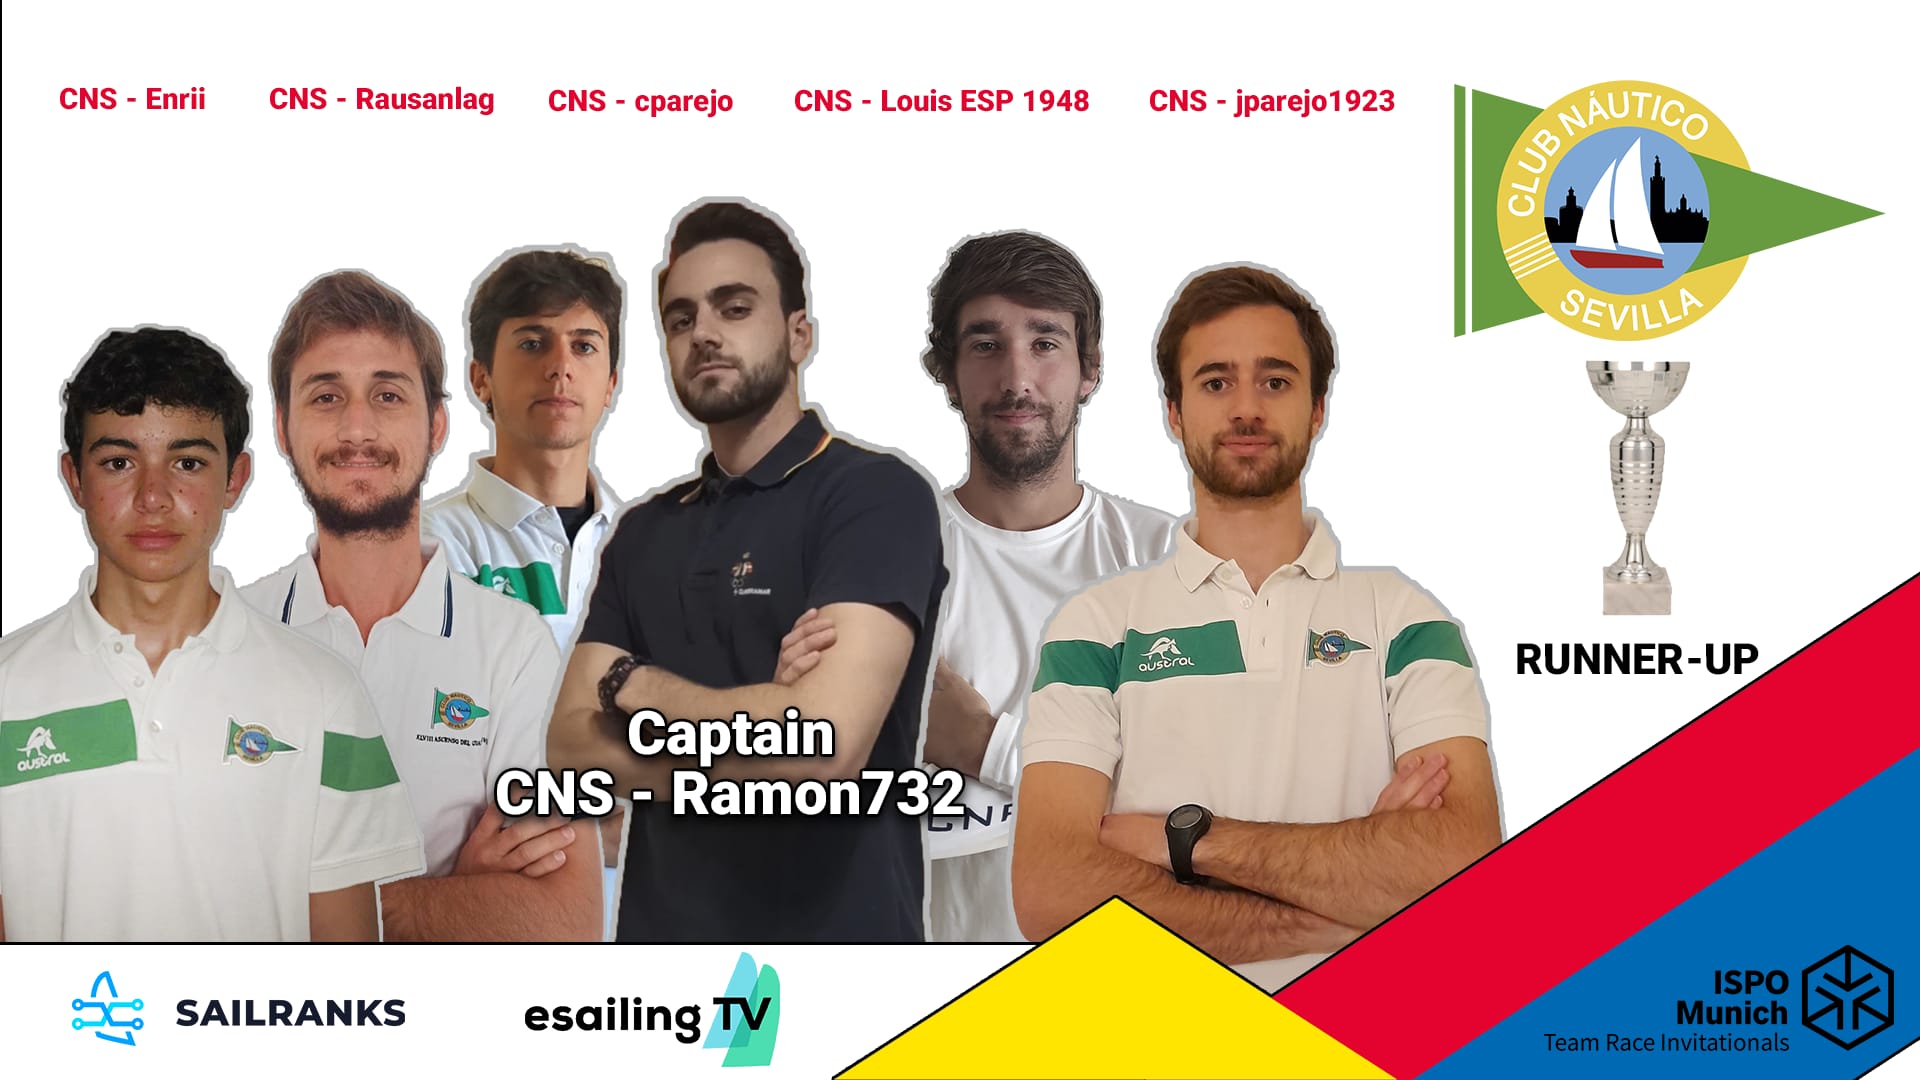 Equipo de eSailing del Náutico Sevilla subcampeón de la ISPO Munich Team Race Invitationals.jpeg